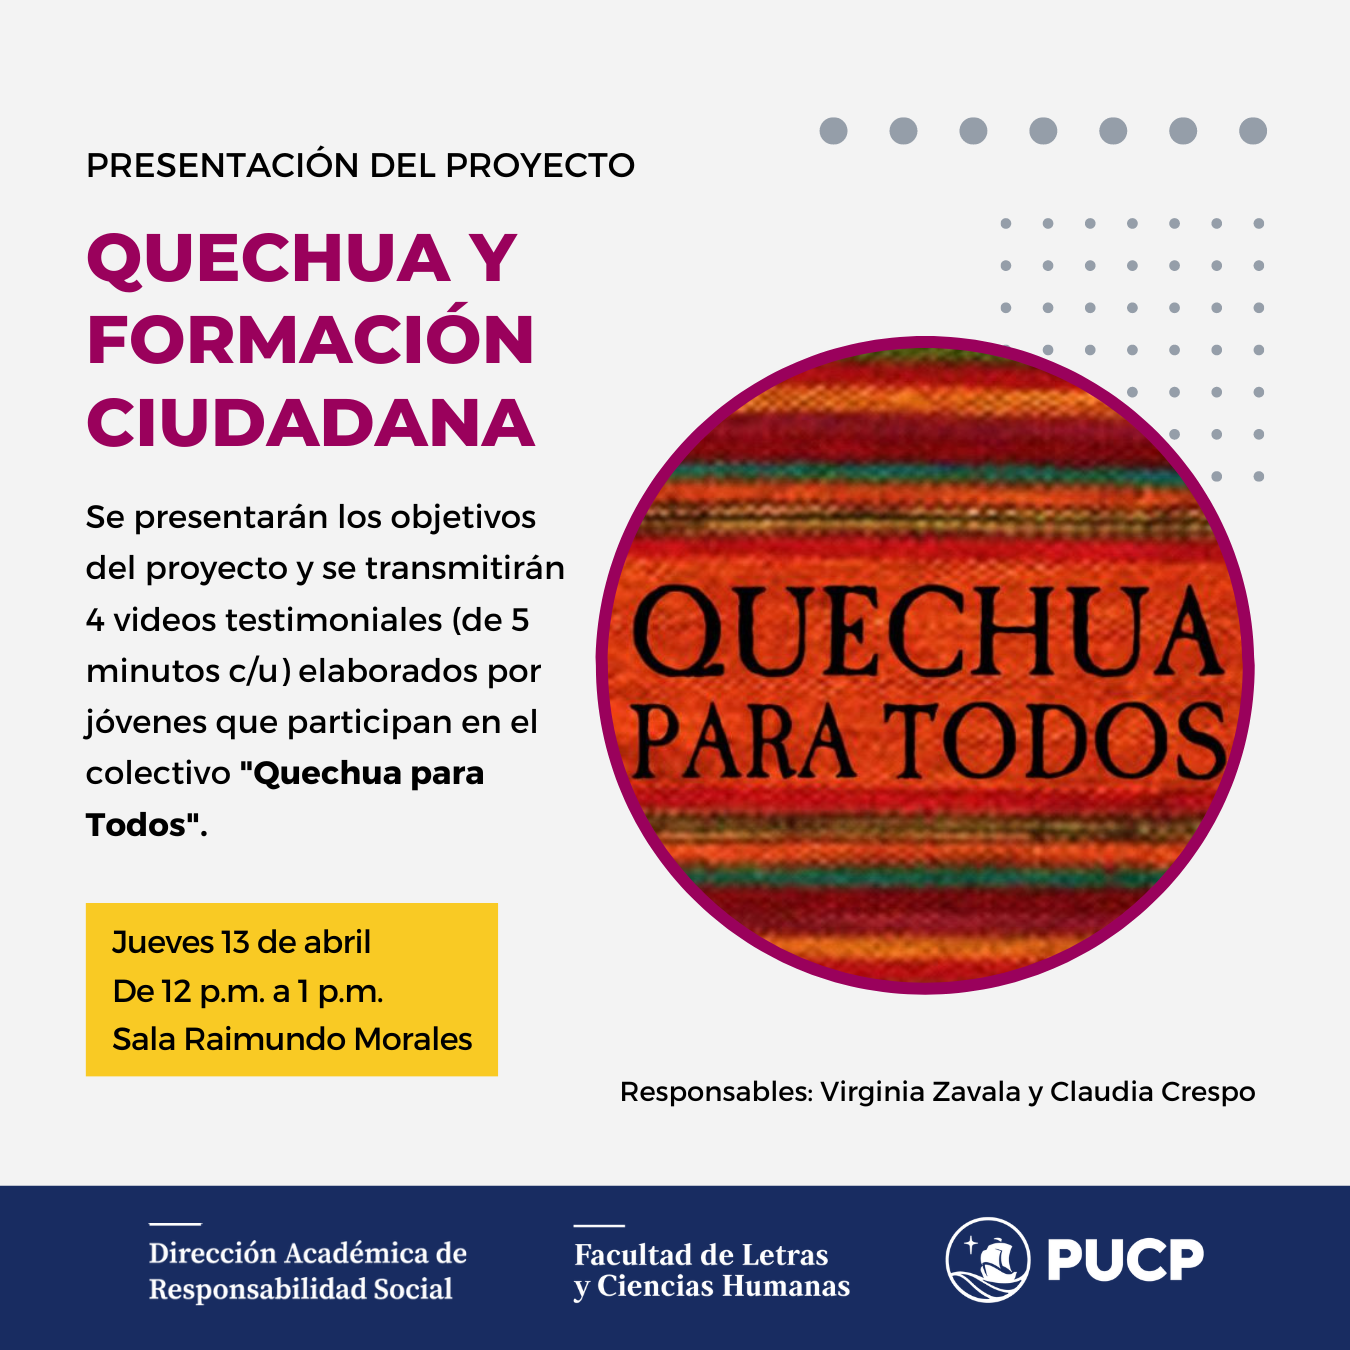 Presentación del proyecto “Quechua y formación ciudadana”